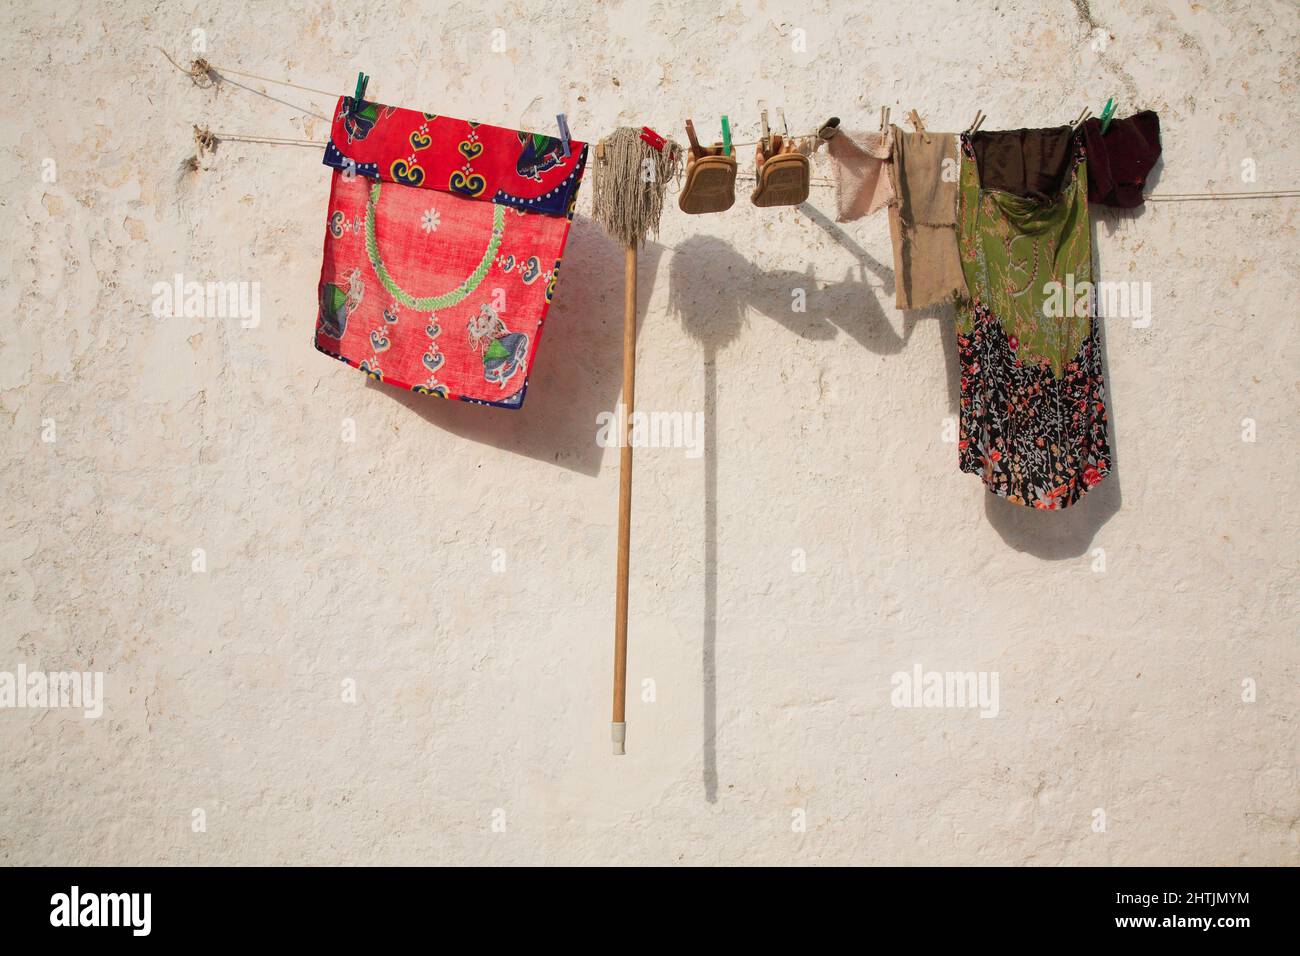 Auf einer Wäscheleine hängen Kleidung, Schuhe und ein Wichmop zum TrocknenSilves, Algarve, Portogallo Foto Stock